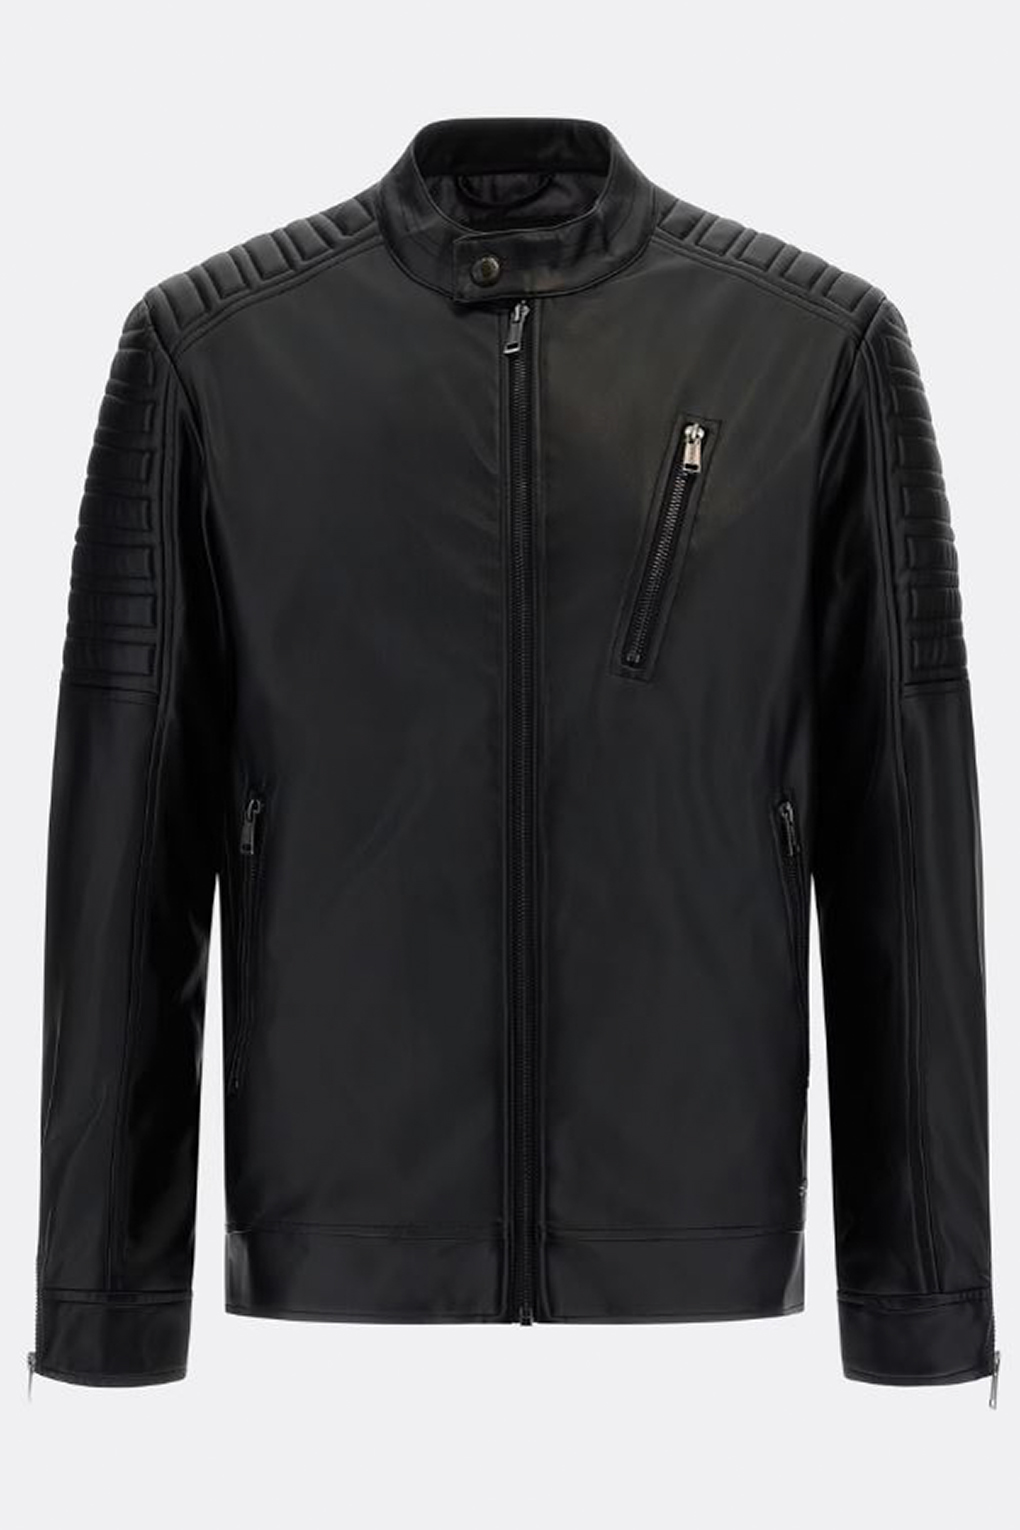 

Кожаная куртка мужская Guess M3RL16 WF4C0 черная XL, Черный, M3RL16 WF4C0